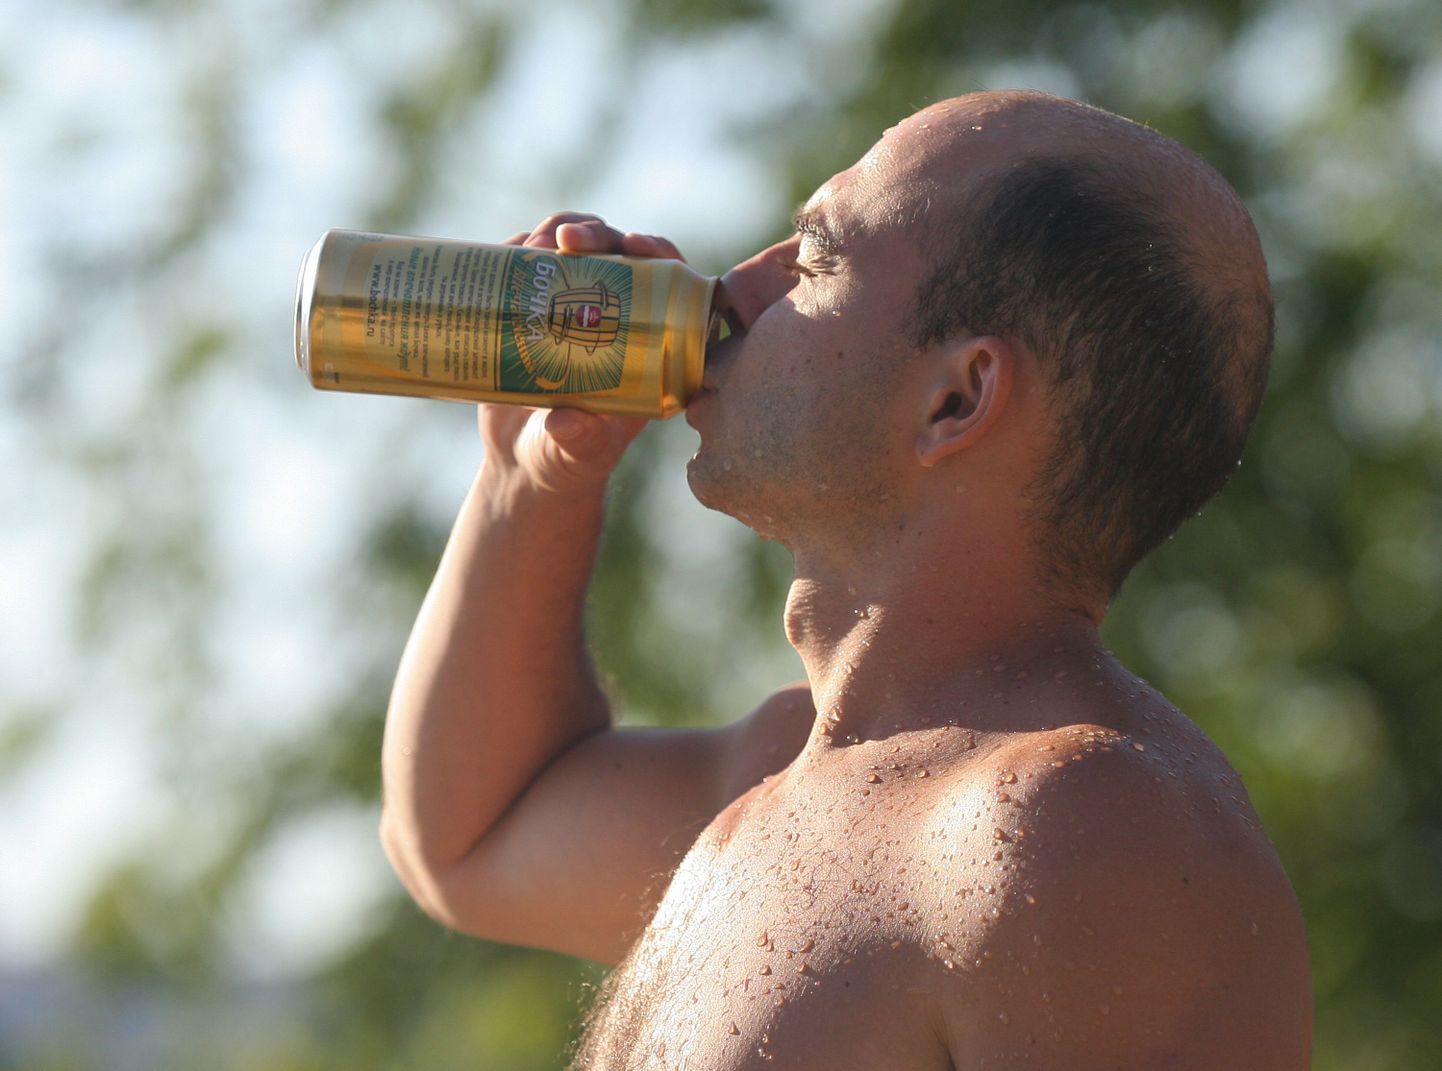 Venemaal plaanitakse lõpetada õlle müük kioskites ja bensiinijaamades